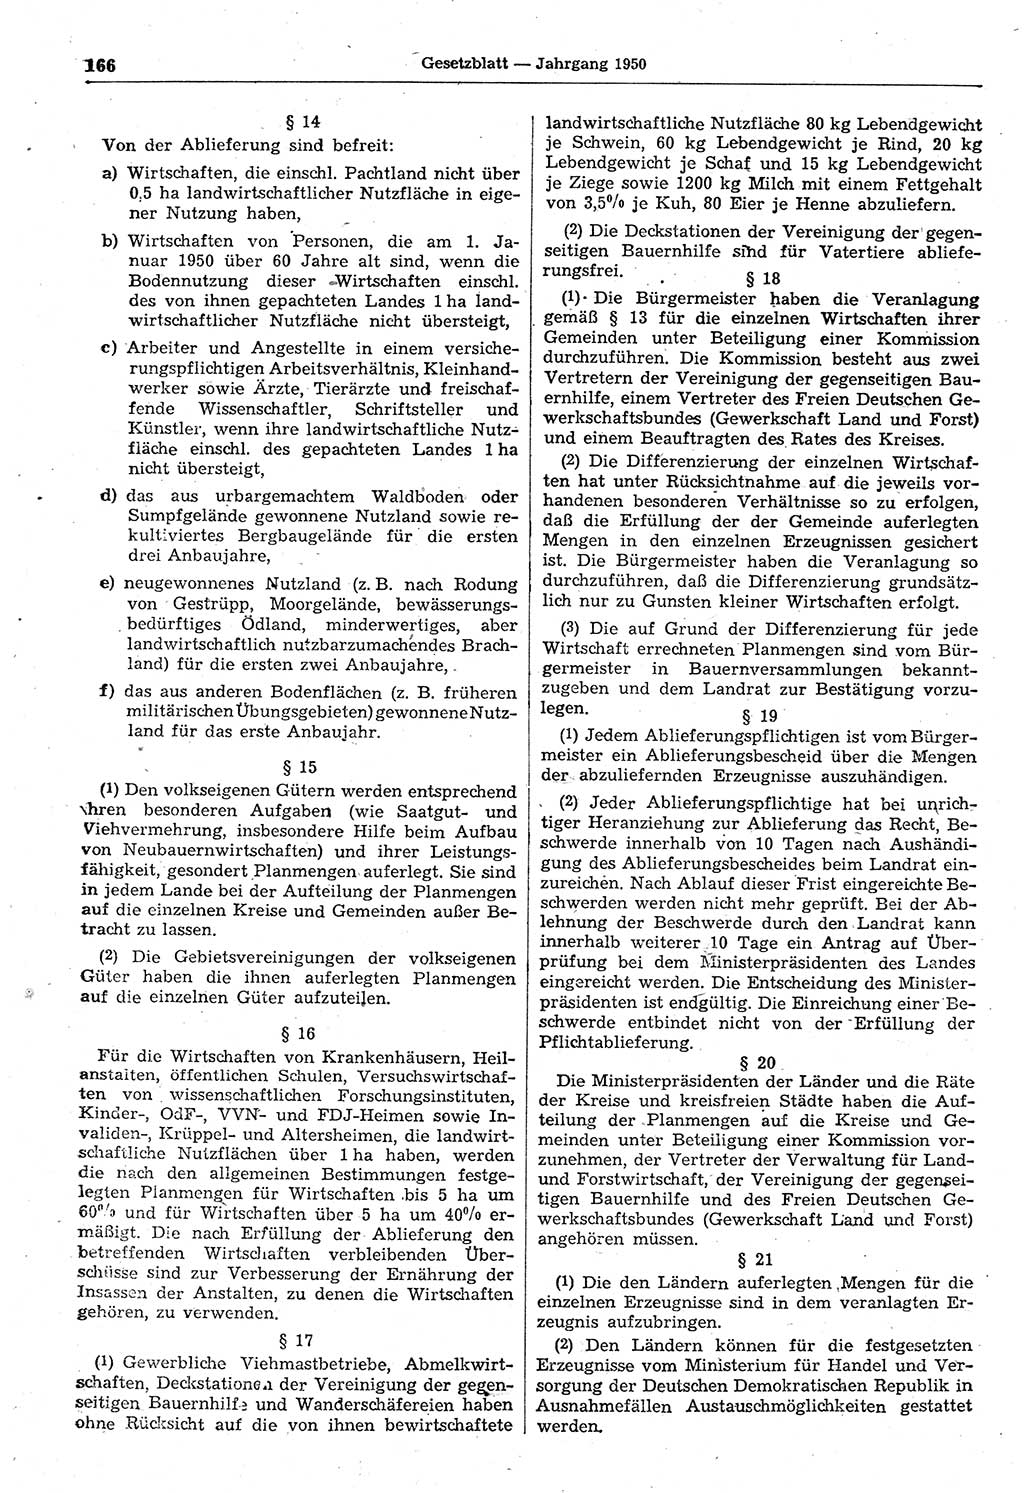 Gesetzblatt (GBl.) der Deutschen Demokratischen Republik (DDR) 1950, Seite 166 (GBl. DDR 1950, S. 166)